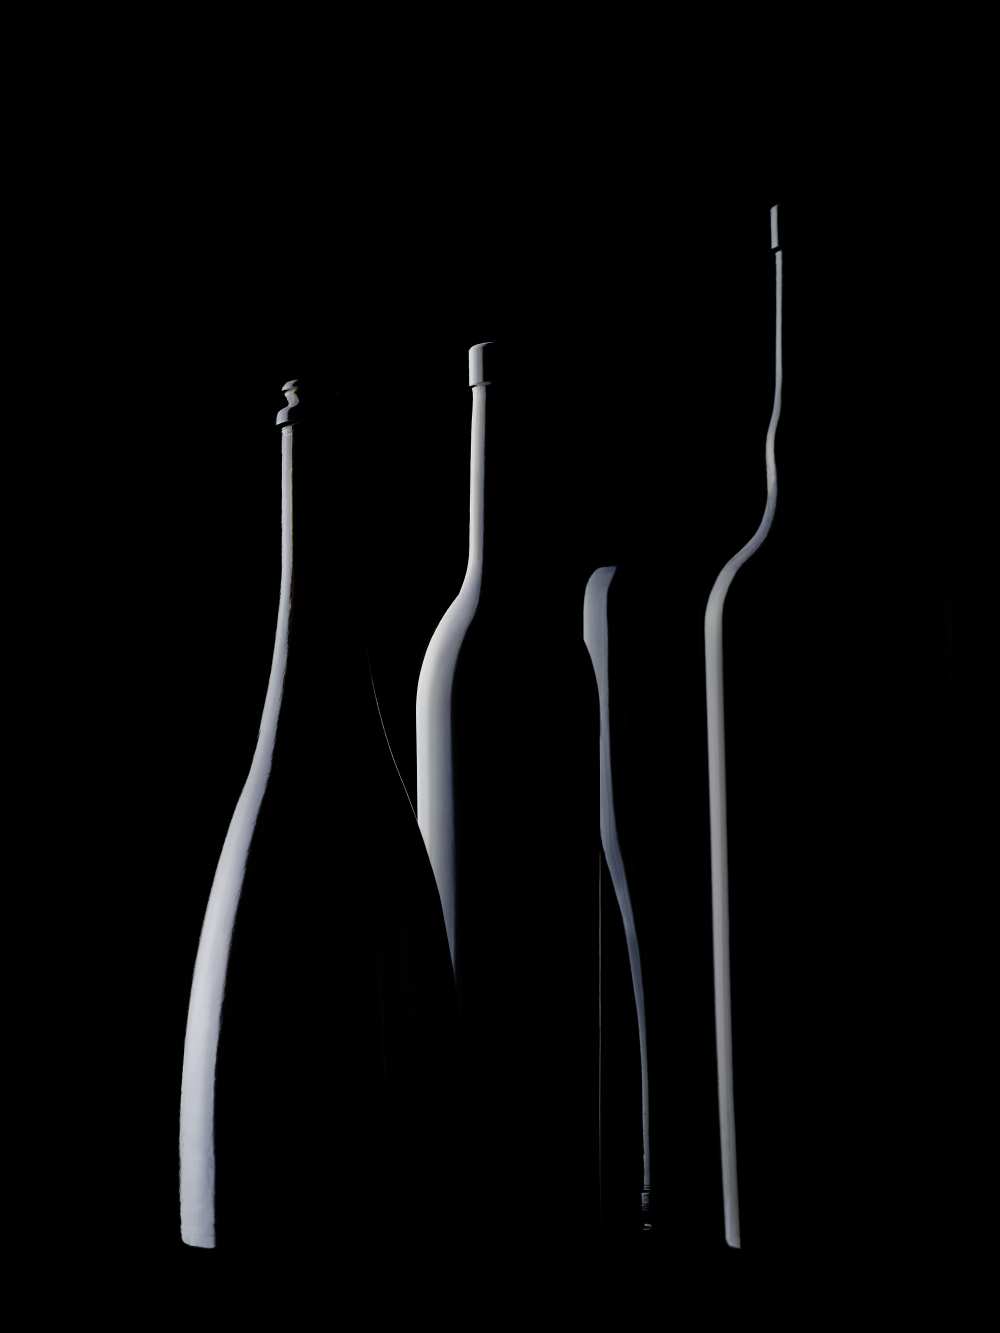 Bottles Waiting von Jorge Pena